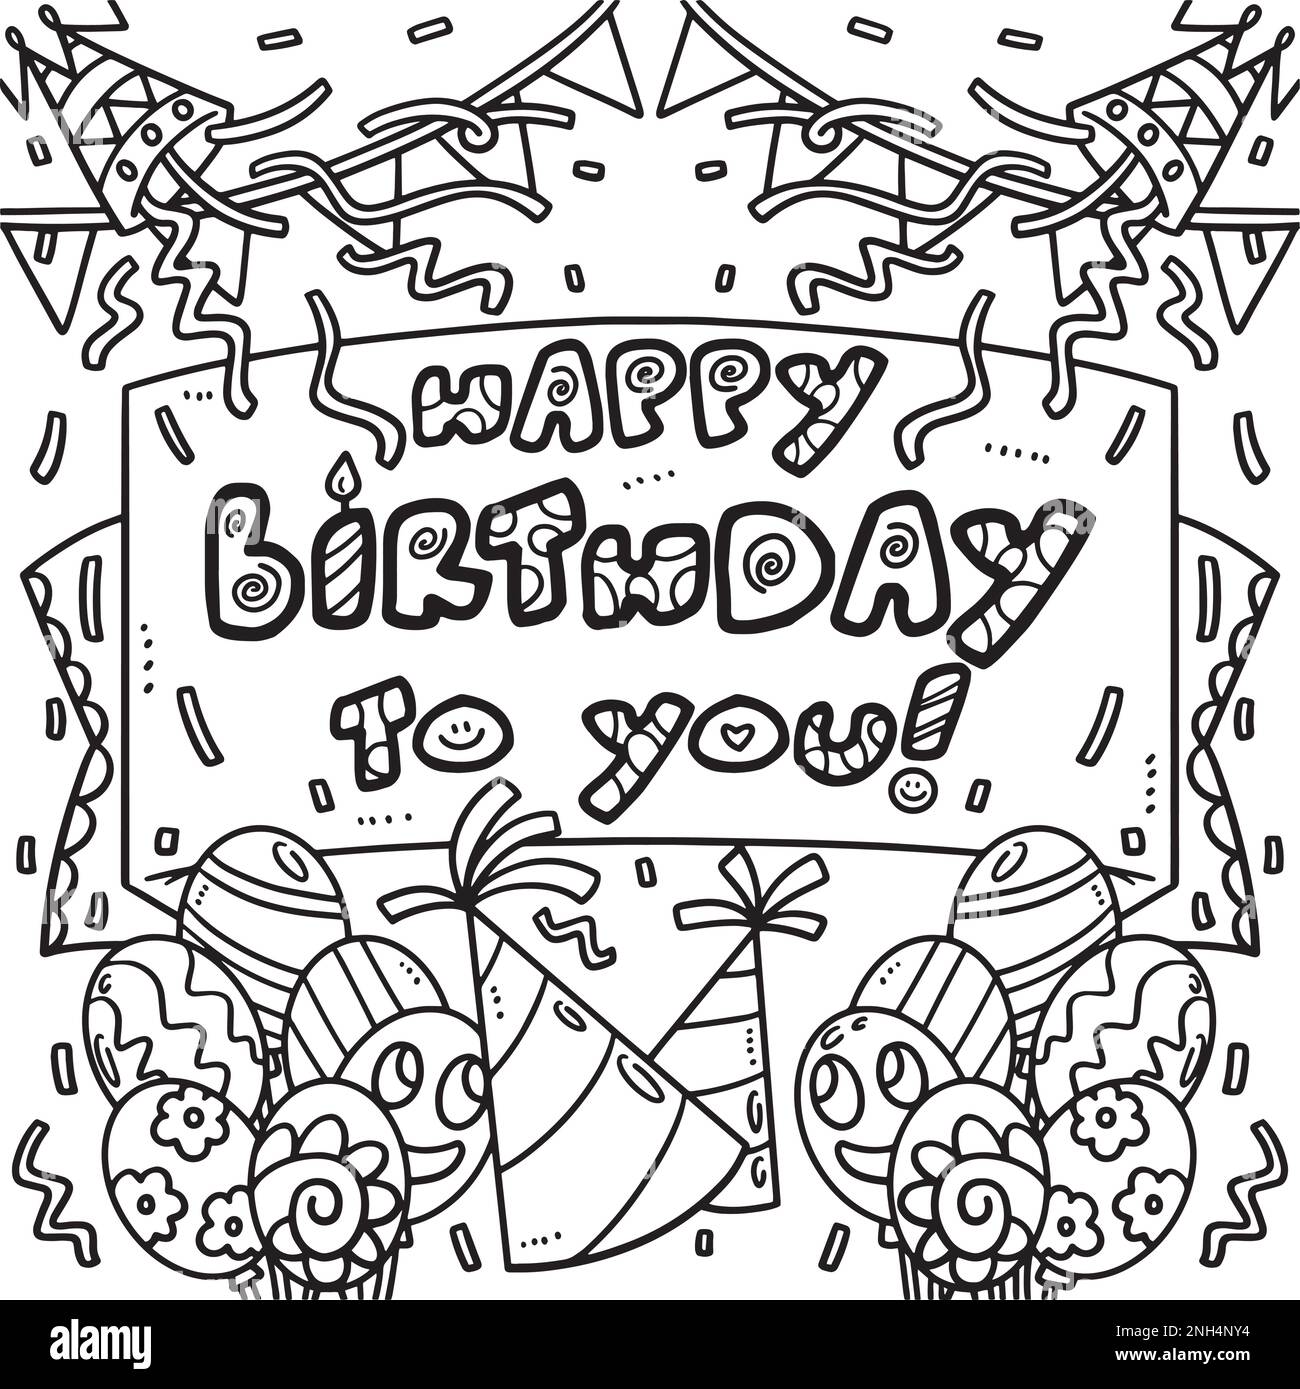 Happy birthday sticker Imágenes de stock en blanco y negro - Alamy